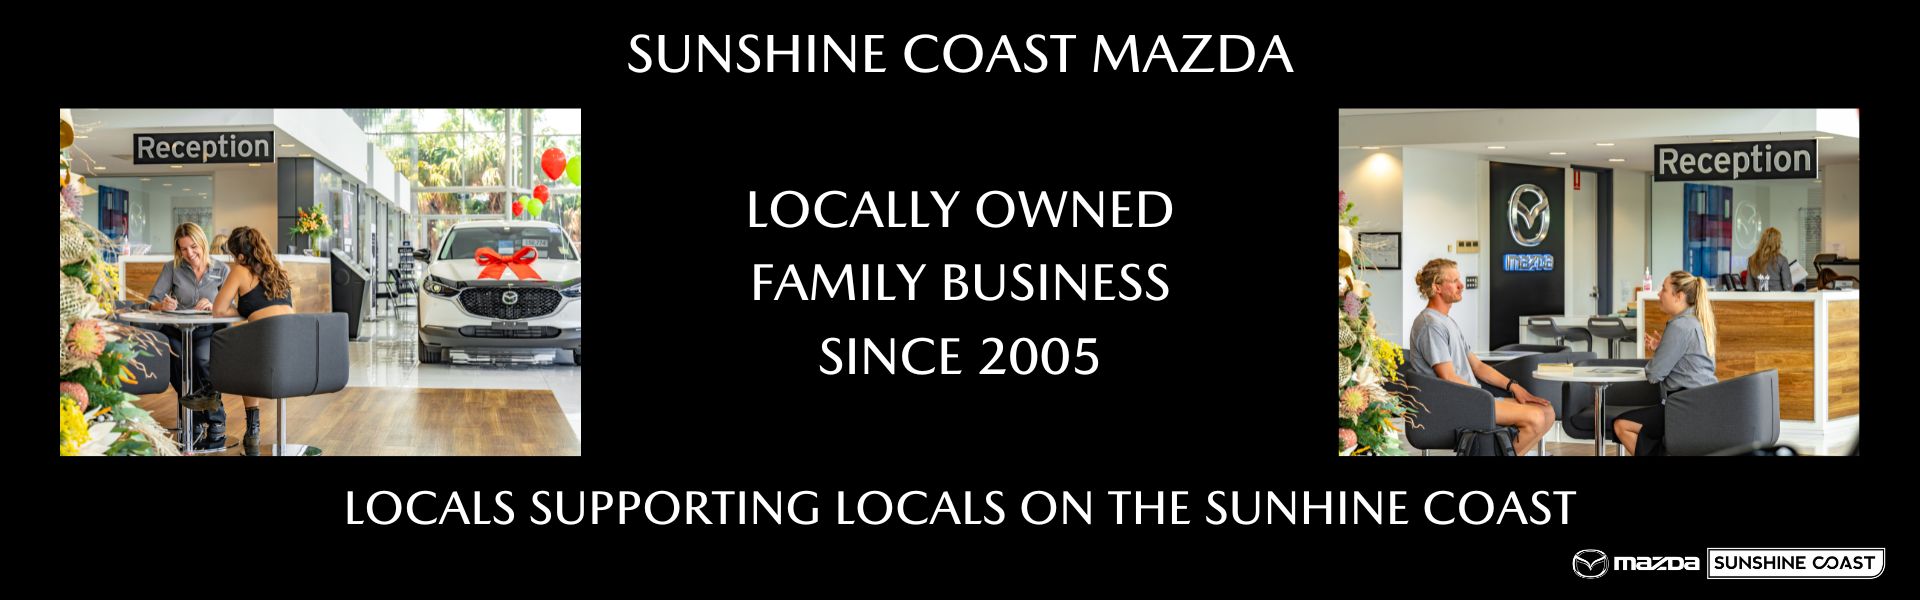 Sunshine Coast Mazda Locally Owned